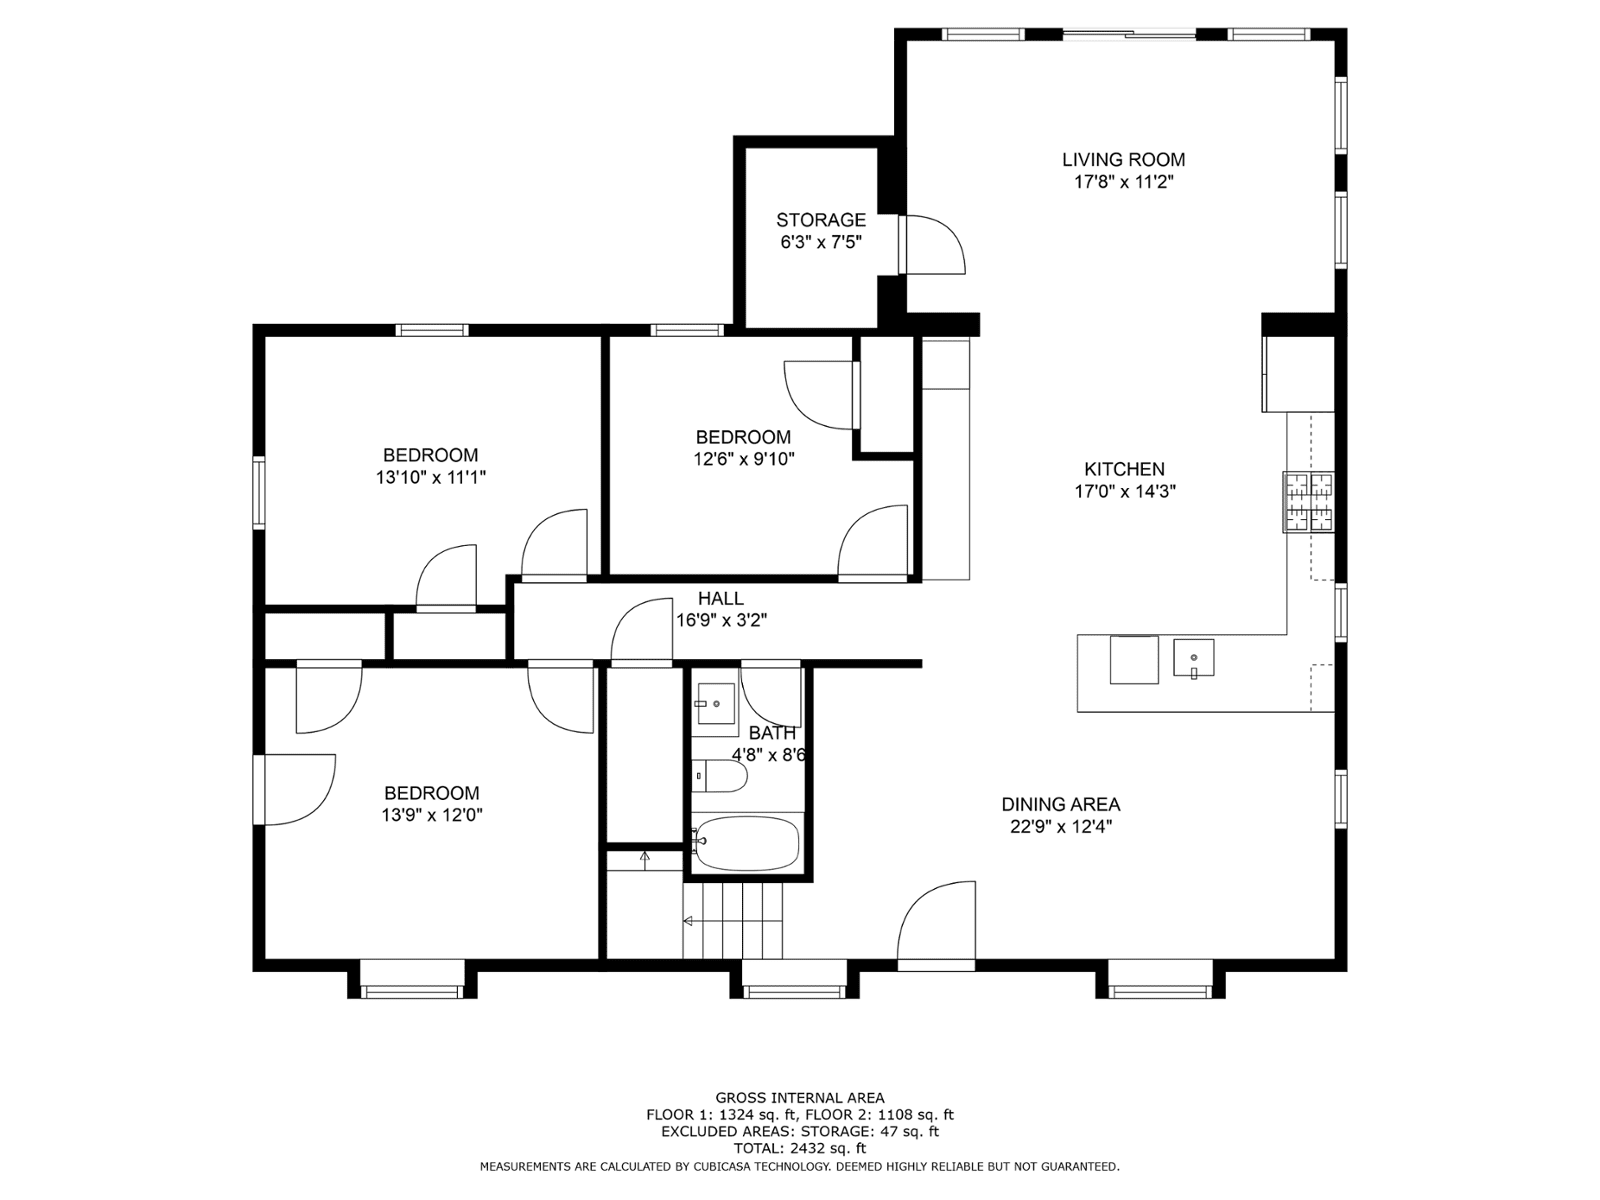 2d floor plan image